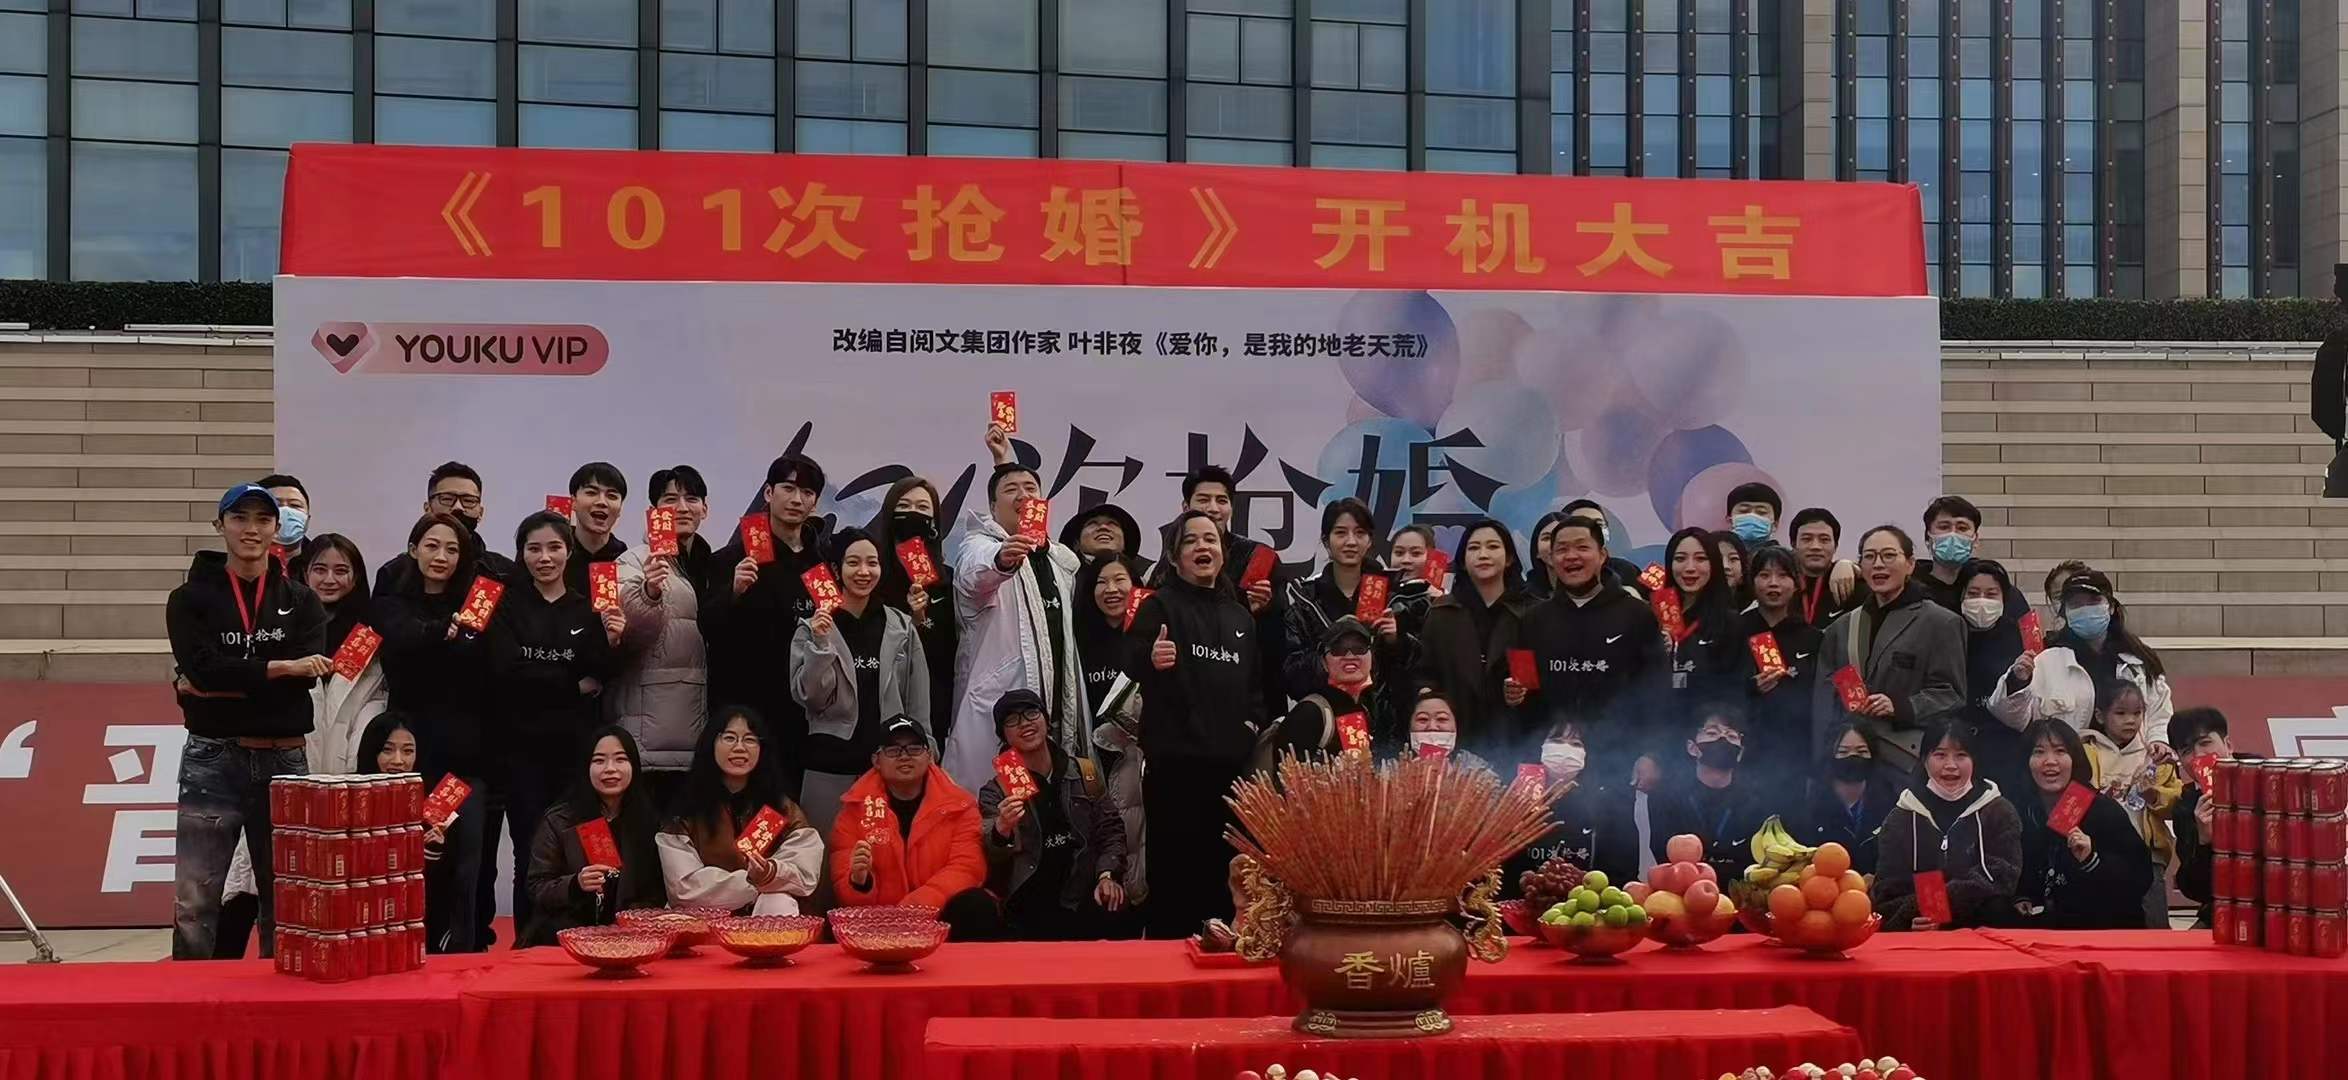 网络剧《101次抢婚》在晋江祖昌音乐厅举行开机仪式